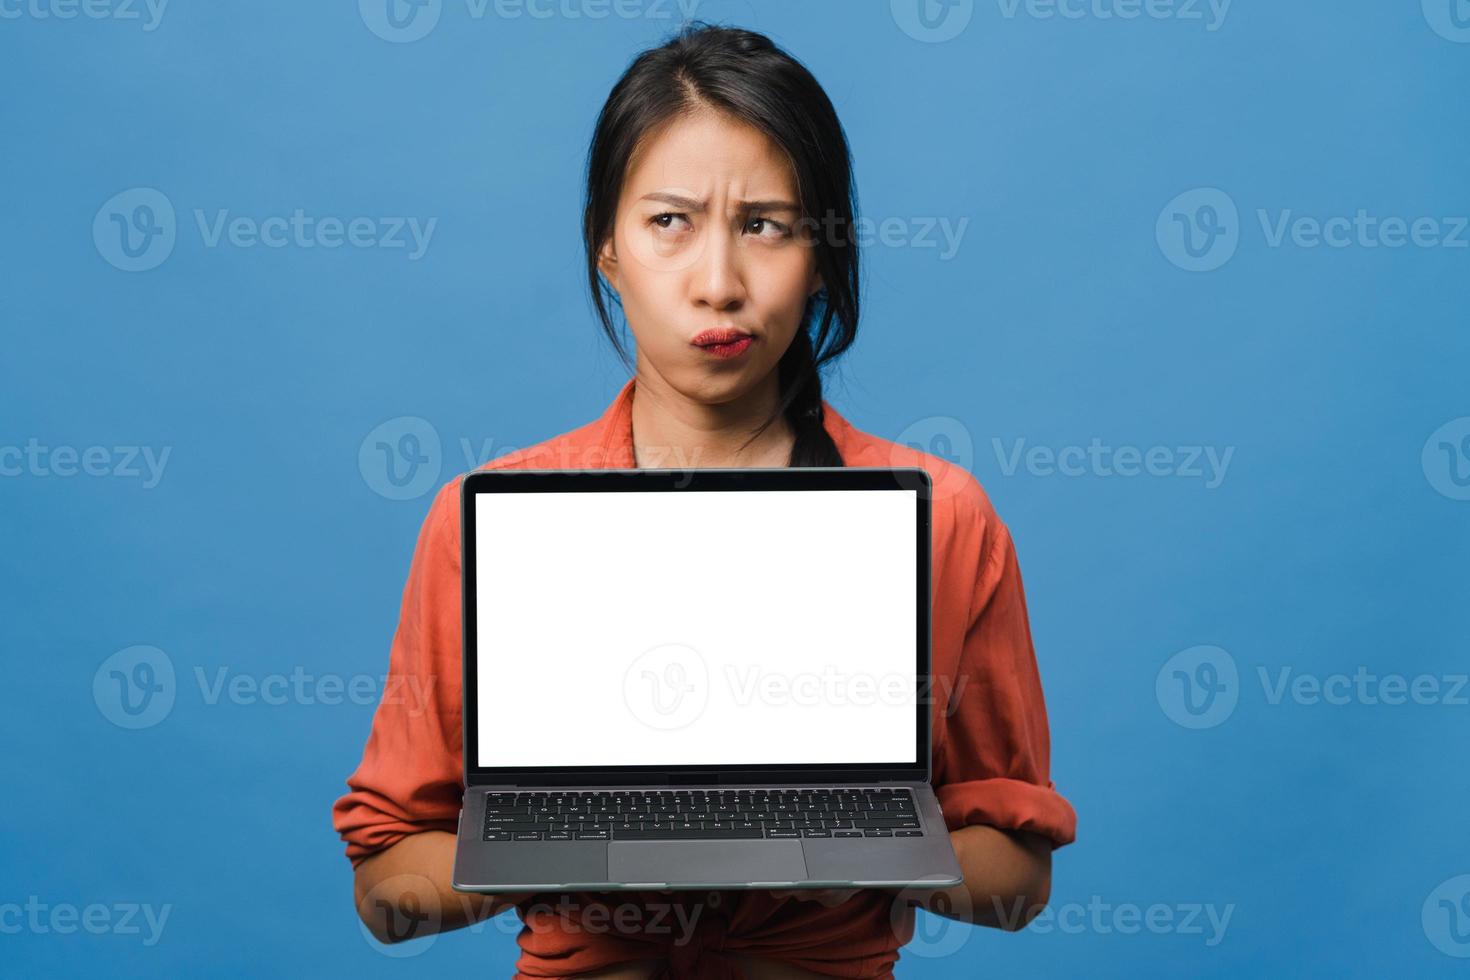 jovem asiática mostra a tela do laptop vazia com expressão positiva, sorri amplamente, vestida com roupas casuais, sentindo felicidade isolada sobre fundo azul. computador com tela branca na mão feminina. foto